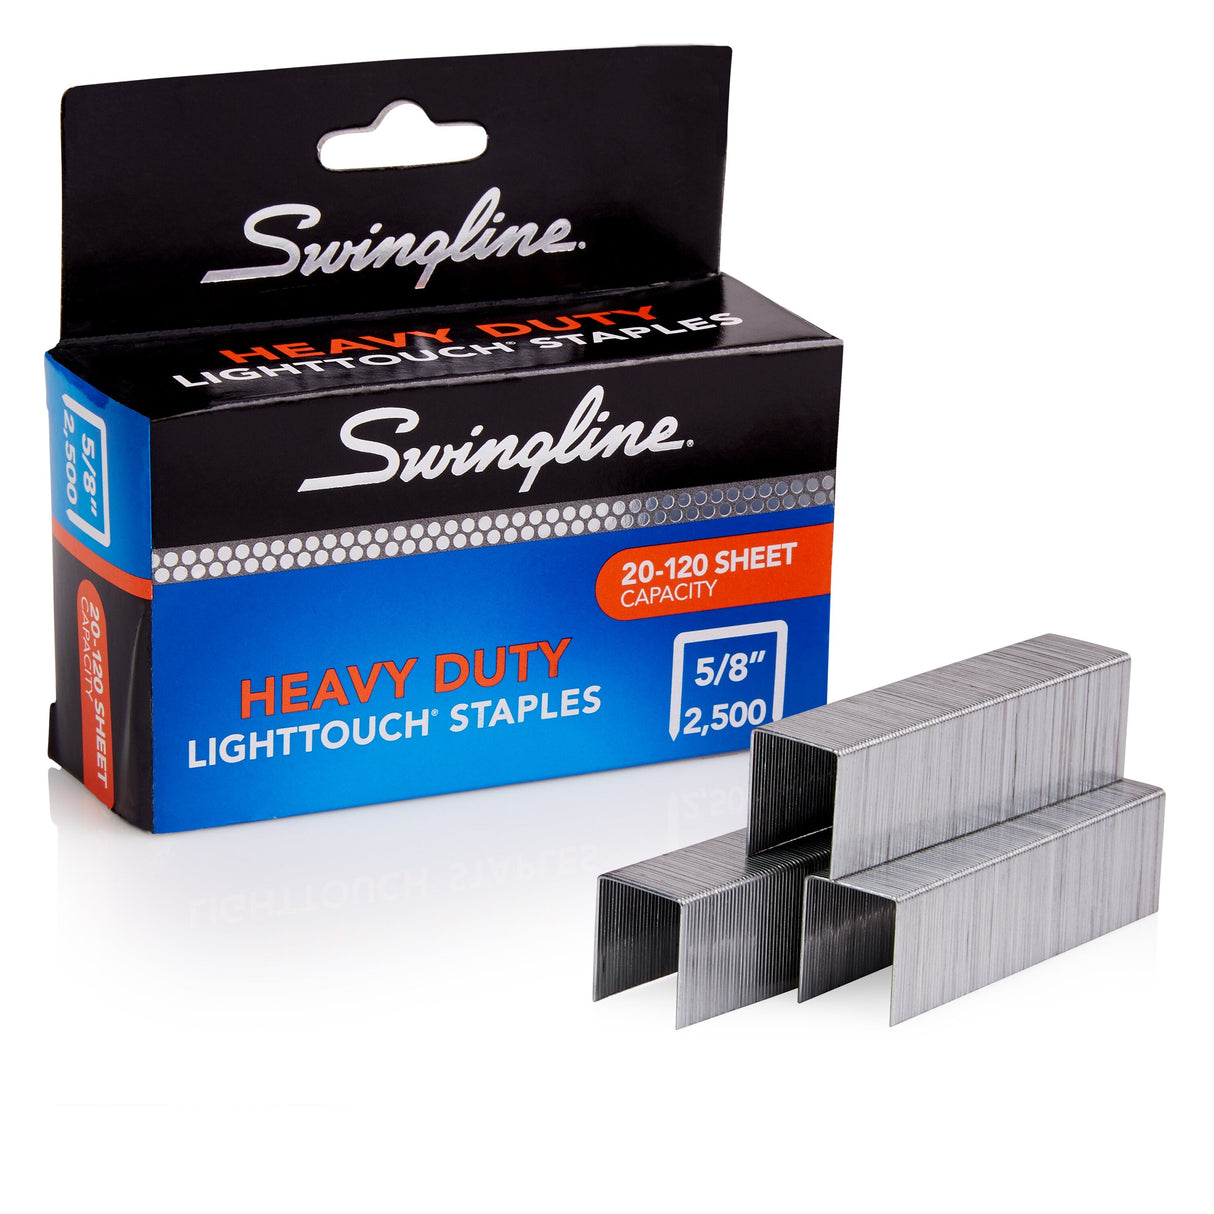 Swingline LightTouch Heavy Duty Staples - 5/8" Leg Length - 2,500 Staples/Box